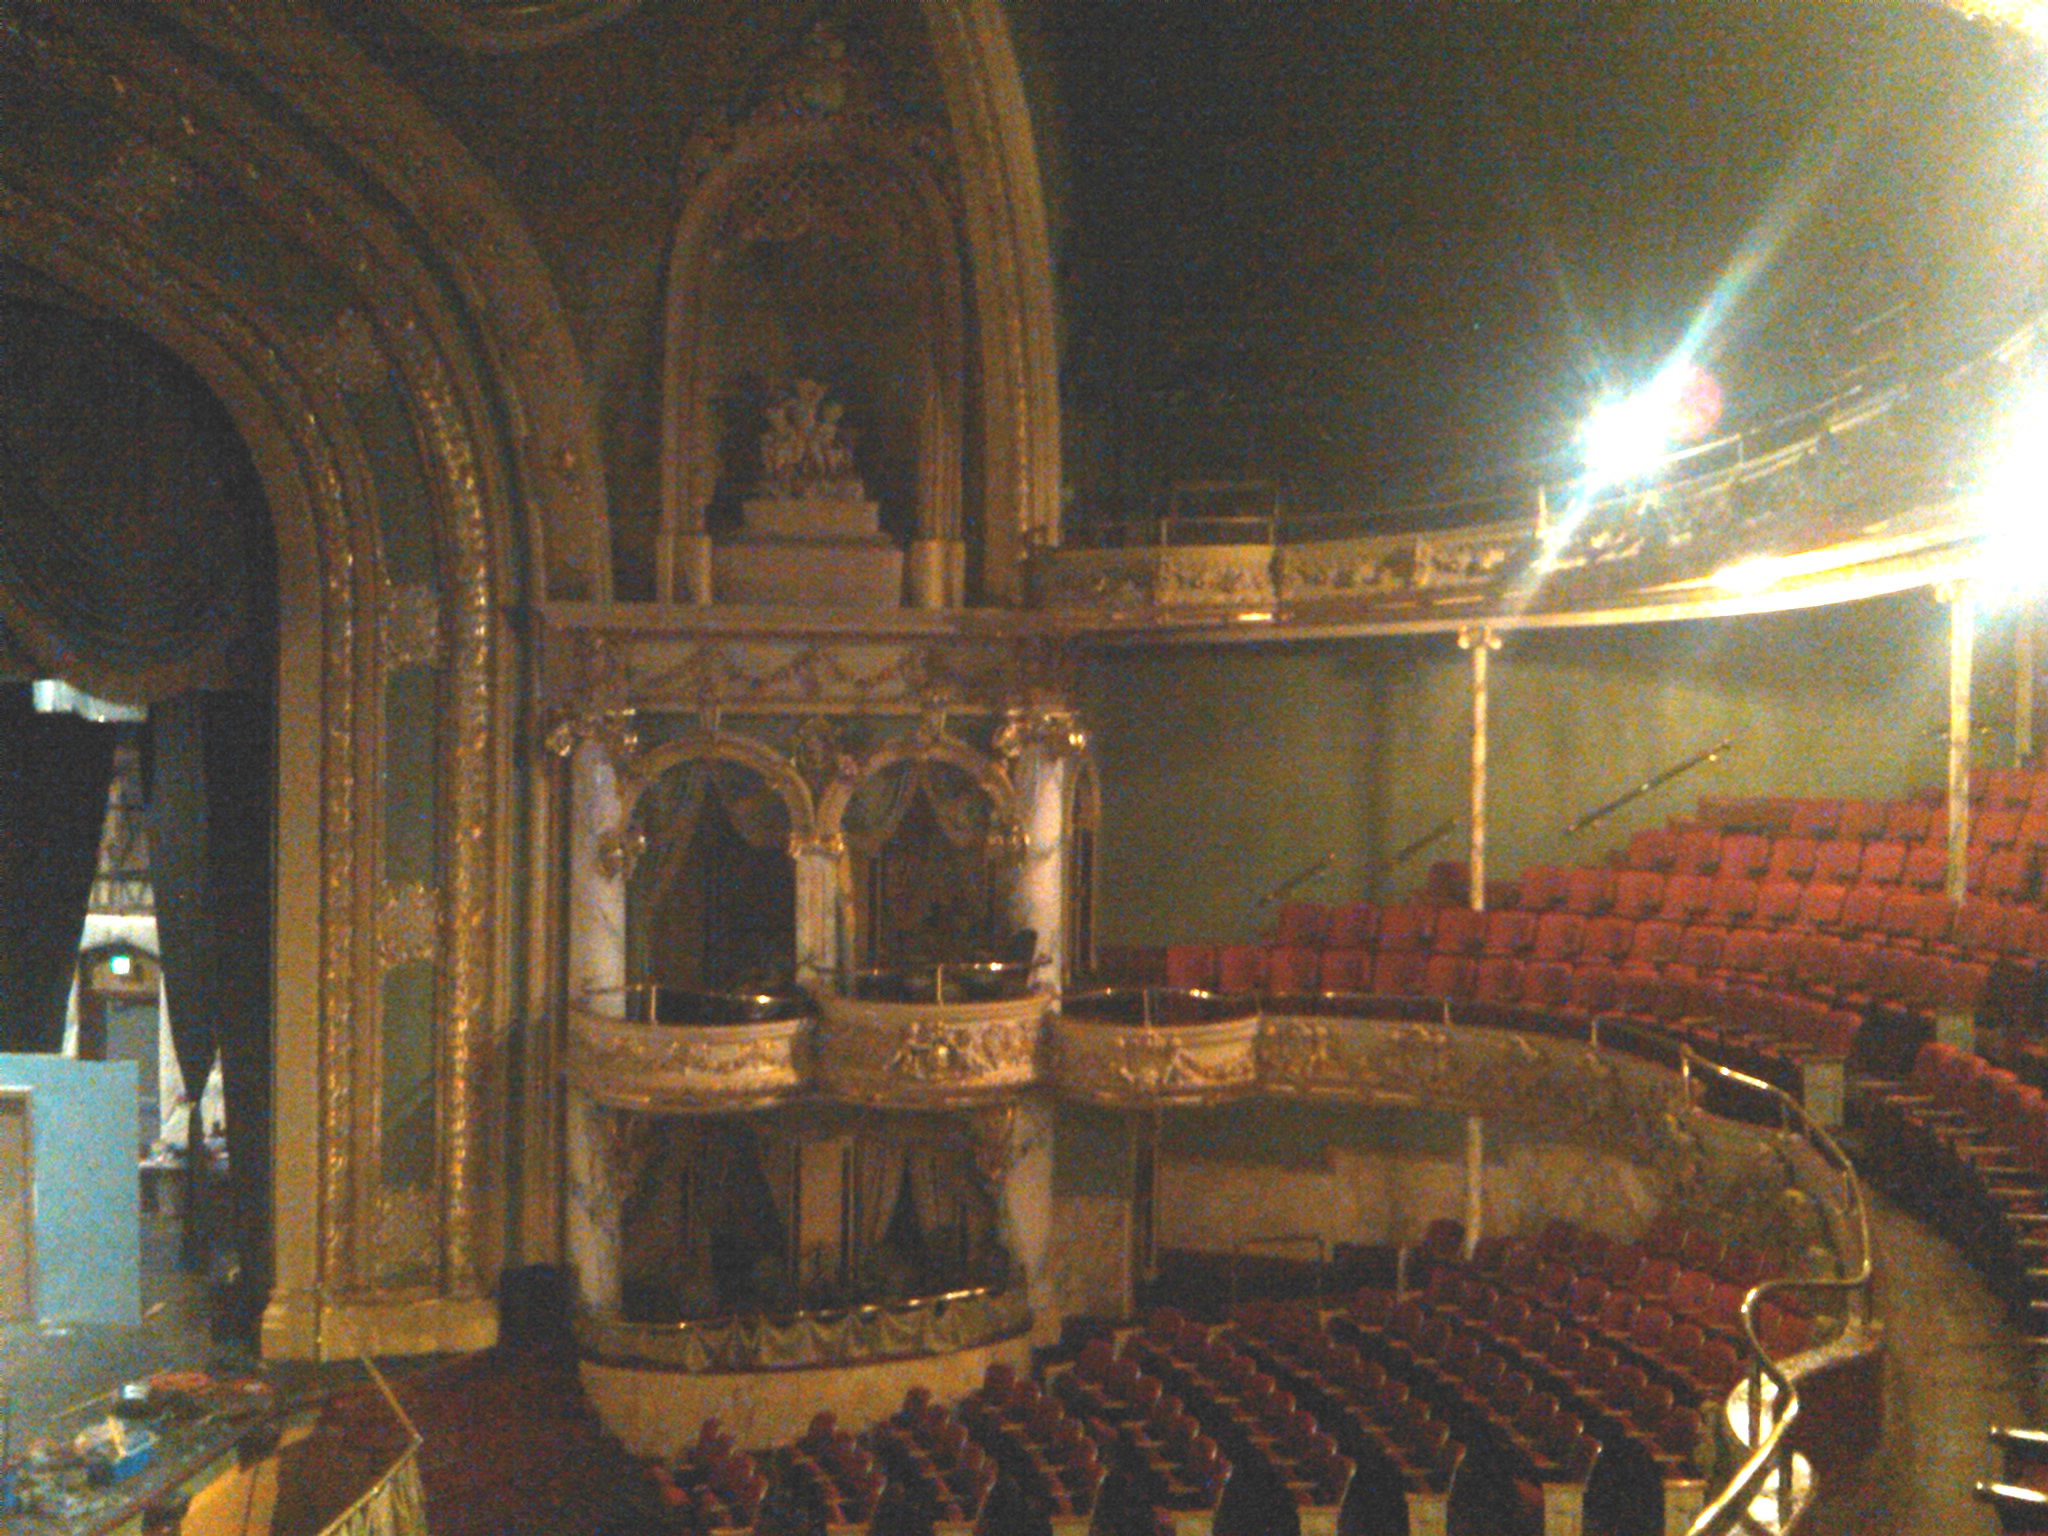 Interior of the Mishler Theatre